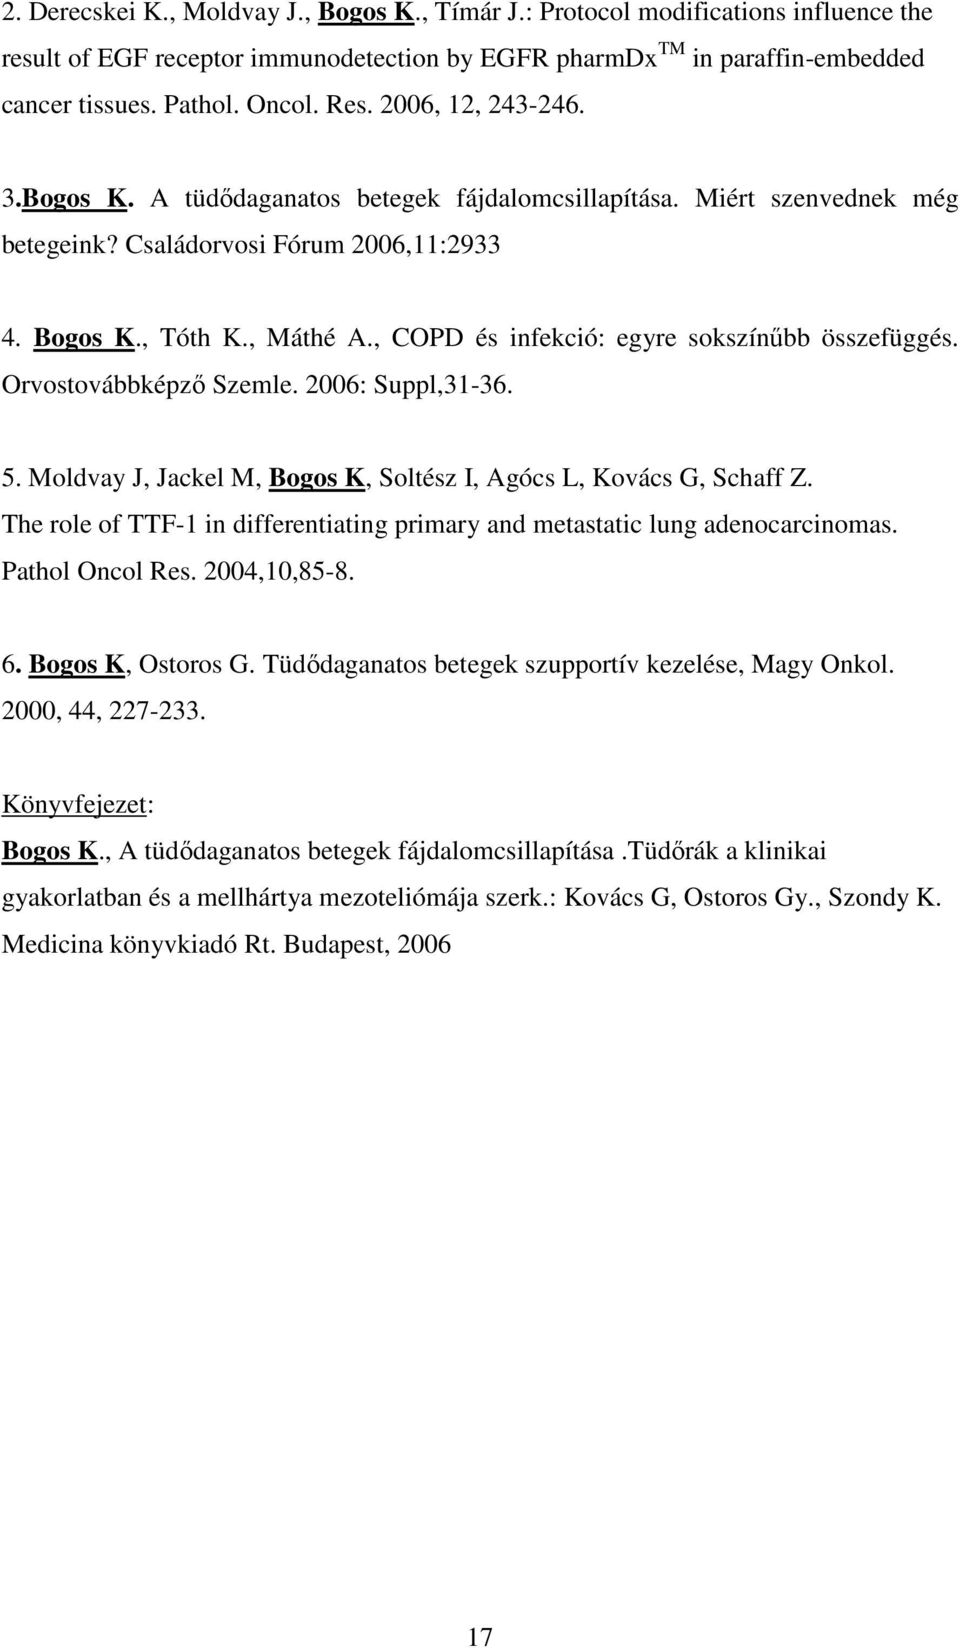 , COPD és infekció: egyre sokszínűbb összefüggés. Orvostovábbképző Szemle. 2006: Suppl,31-36. 5. Moldvay J, Jackel M, Bogos K, Soltész I, Agócs L, Kovács G, Schaff Z.